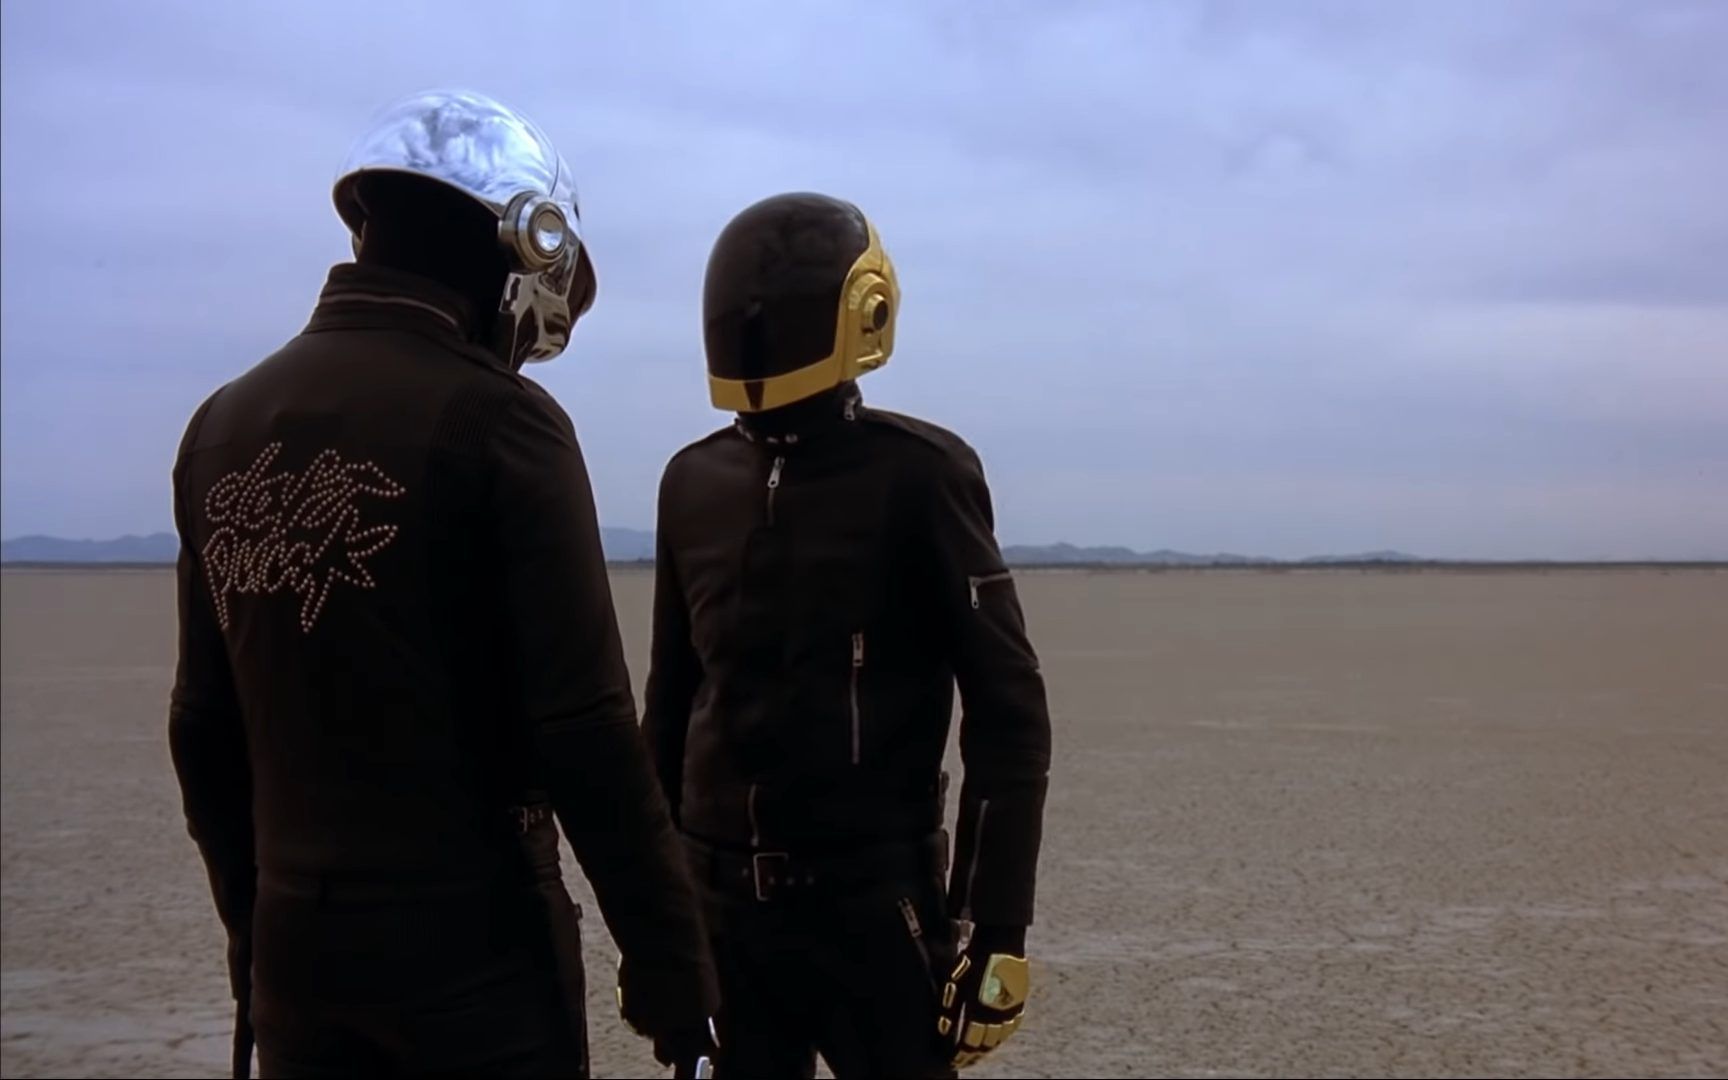 传奇电音双人组 Daft Punk 解散最后一支MV「Epilogue」